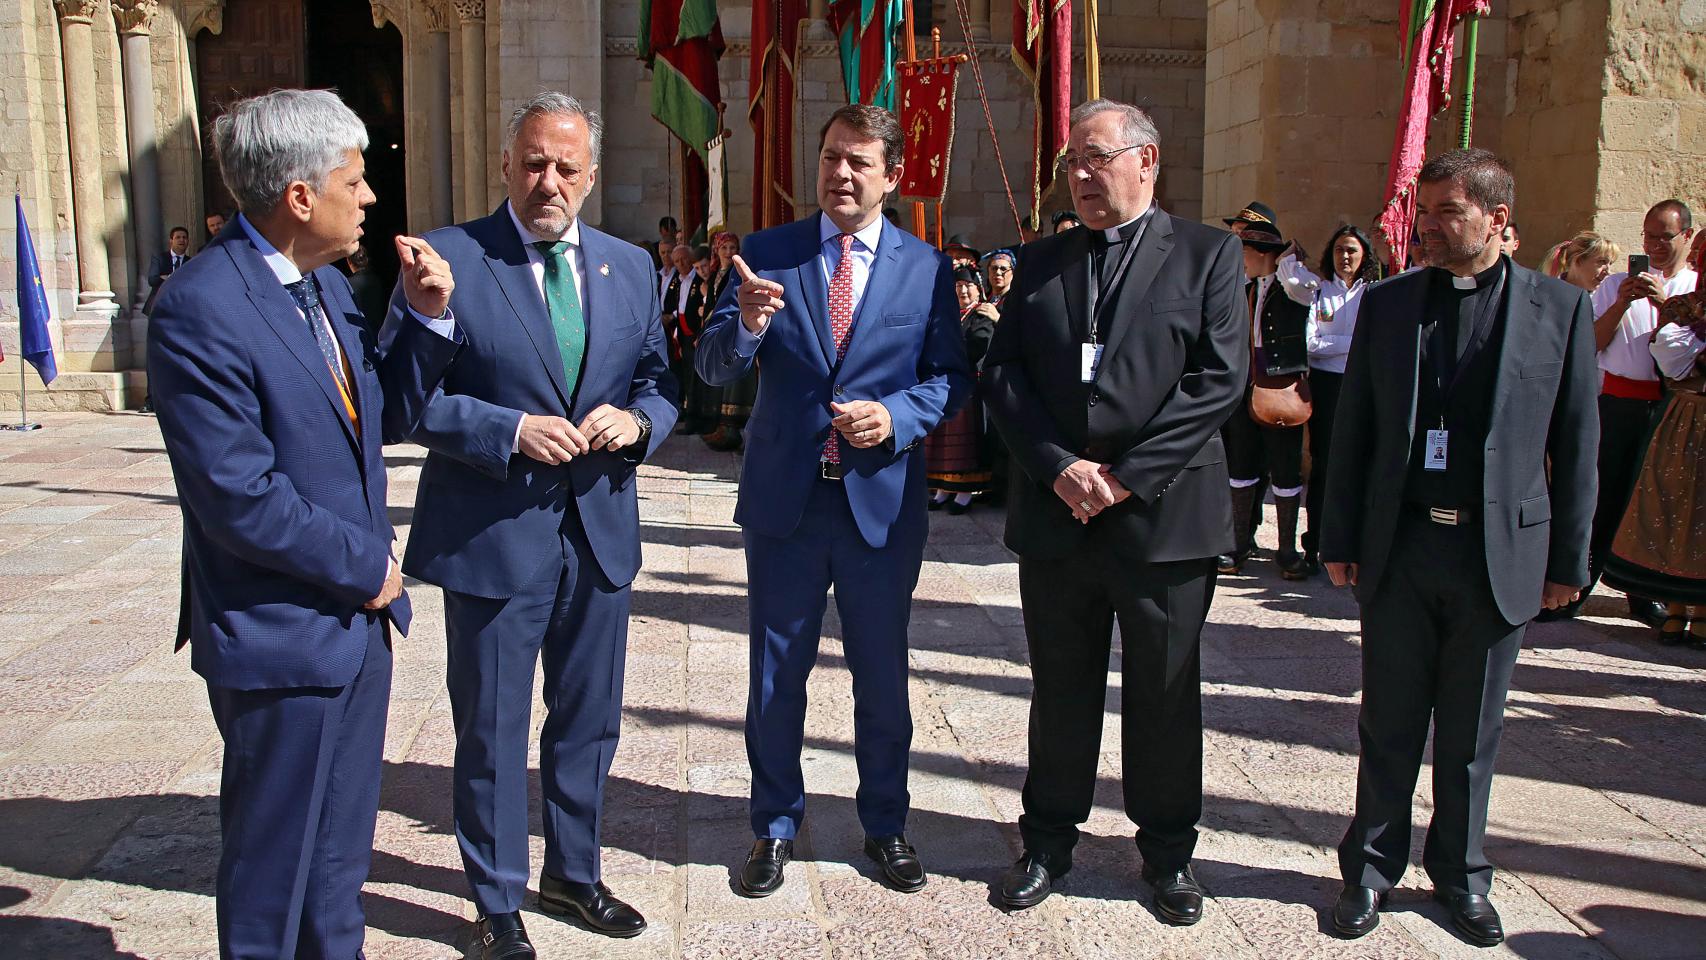 El presidente de la Junta, Fernández Mañueco, y el presidente de las Cortes de Castilla y León, Carlos Pollán, entre otras autoridades, a su llegada